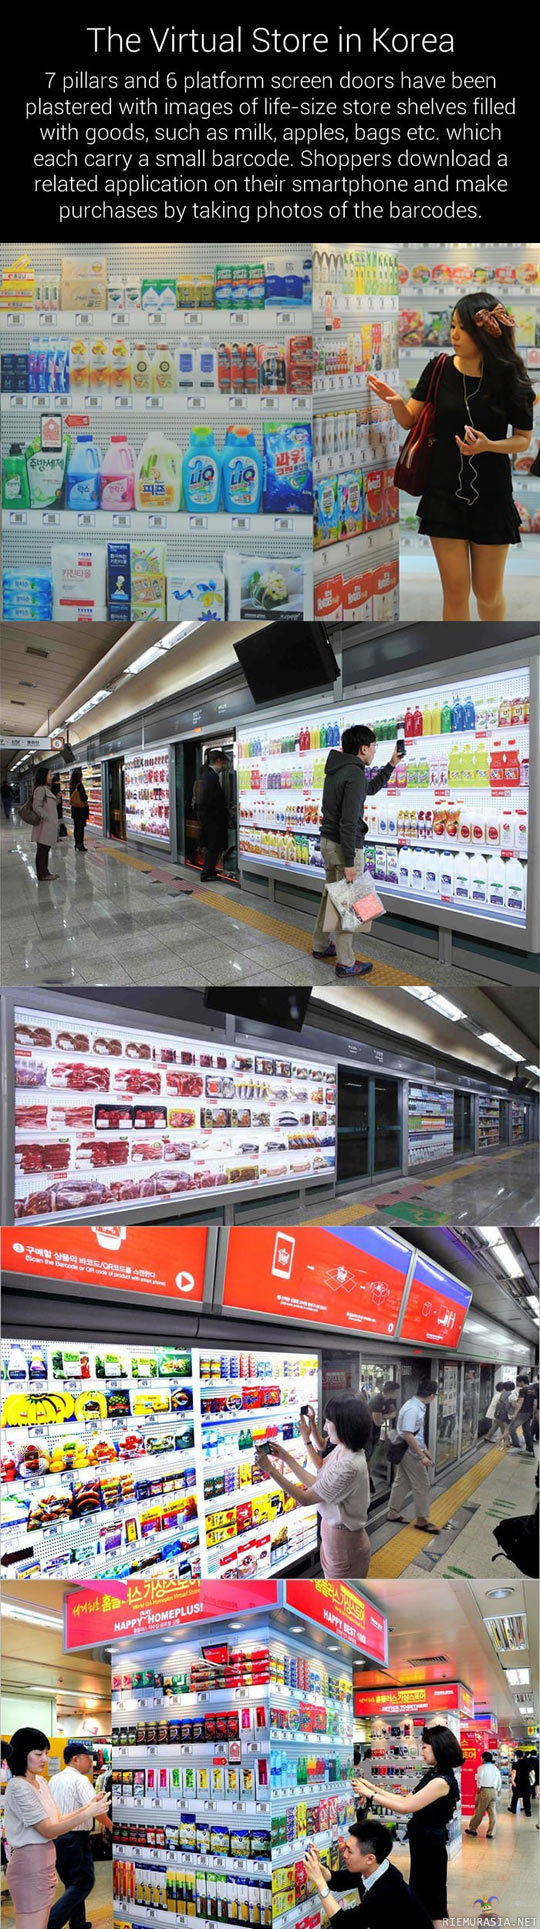 Virtuaalinen kauppa - Only in Korea